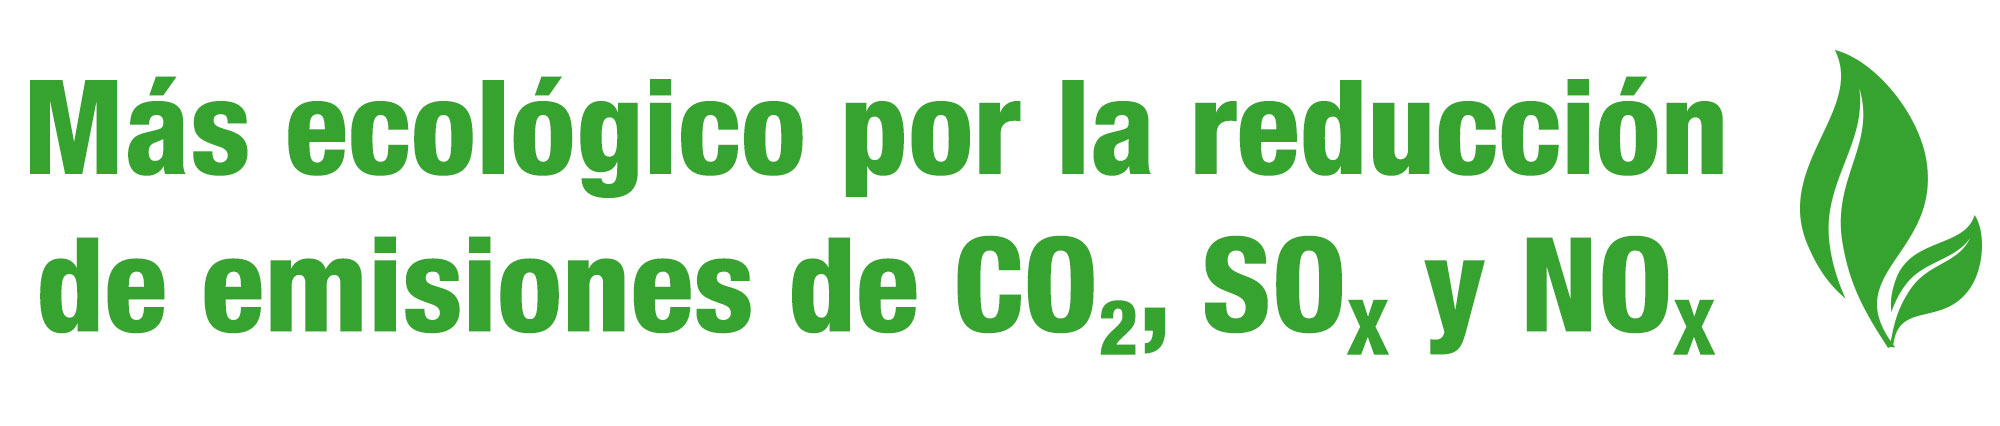 Más ecológico por la reducción de emisiones de CO2, SOX y NOX